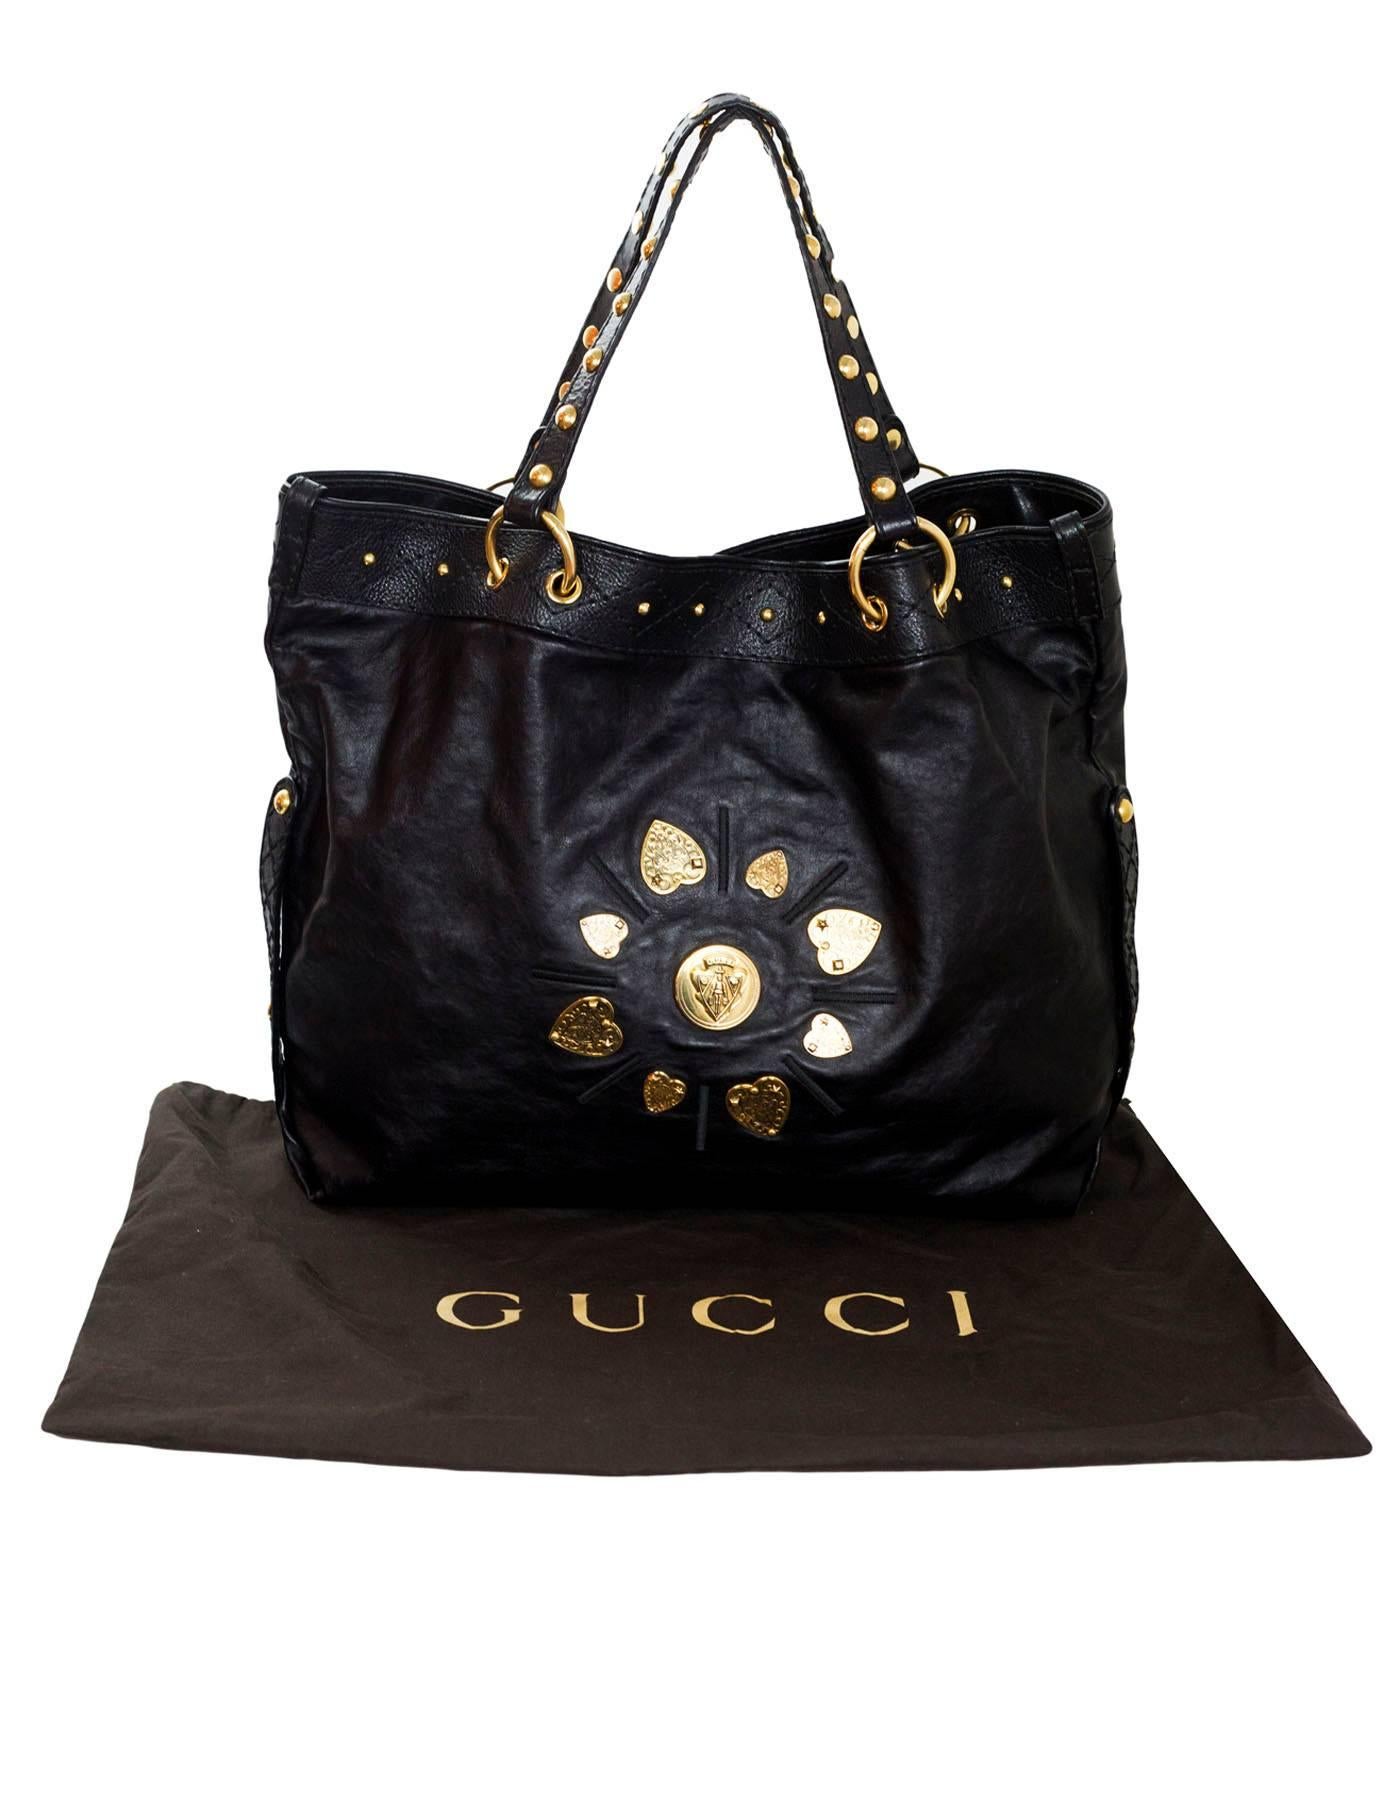 Gucci Black Leather Irina Hysteria Tote Bag 5